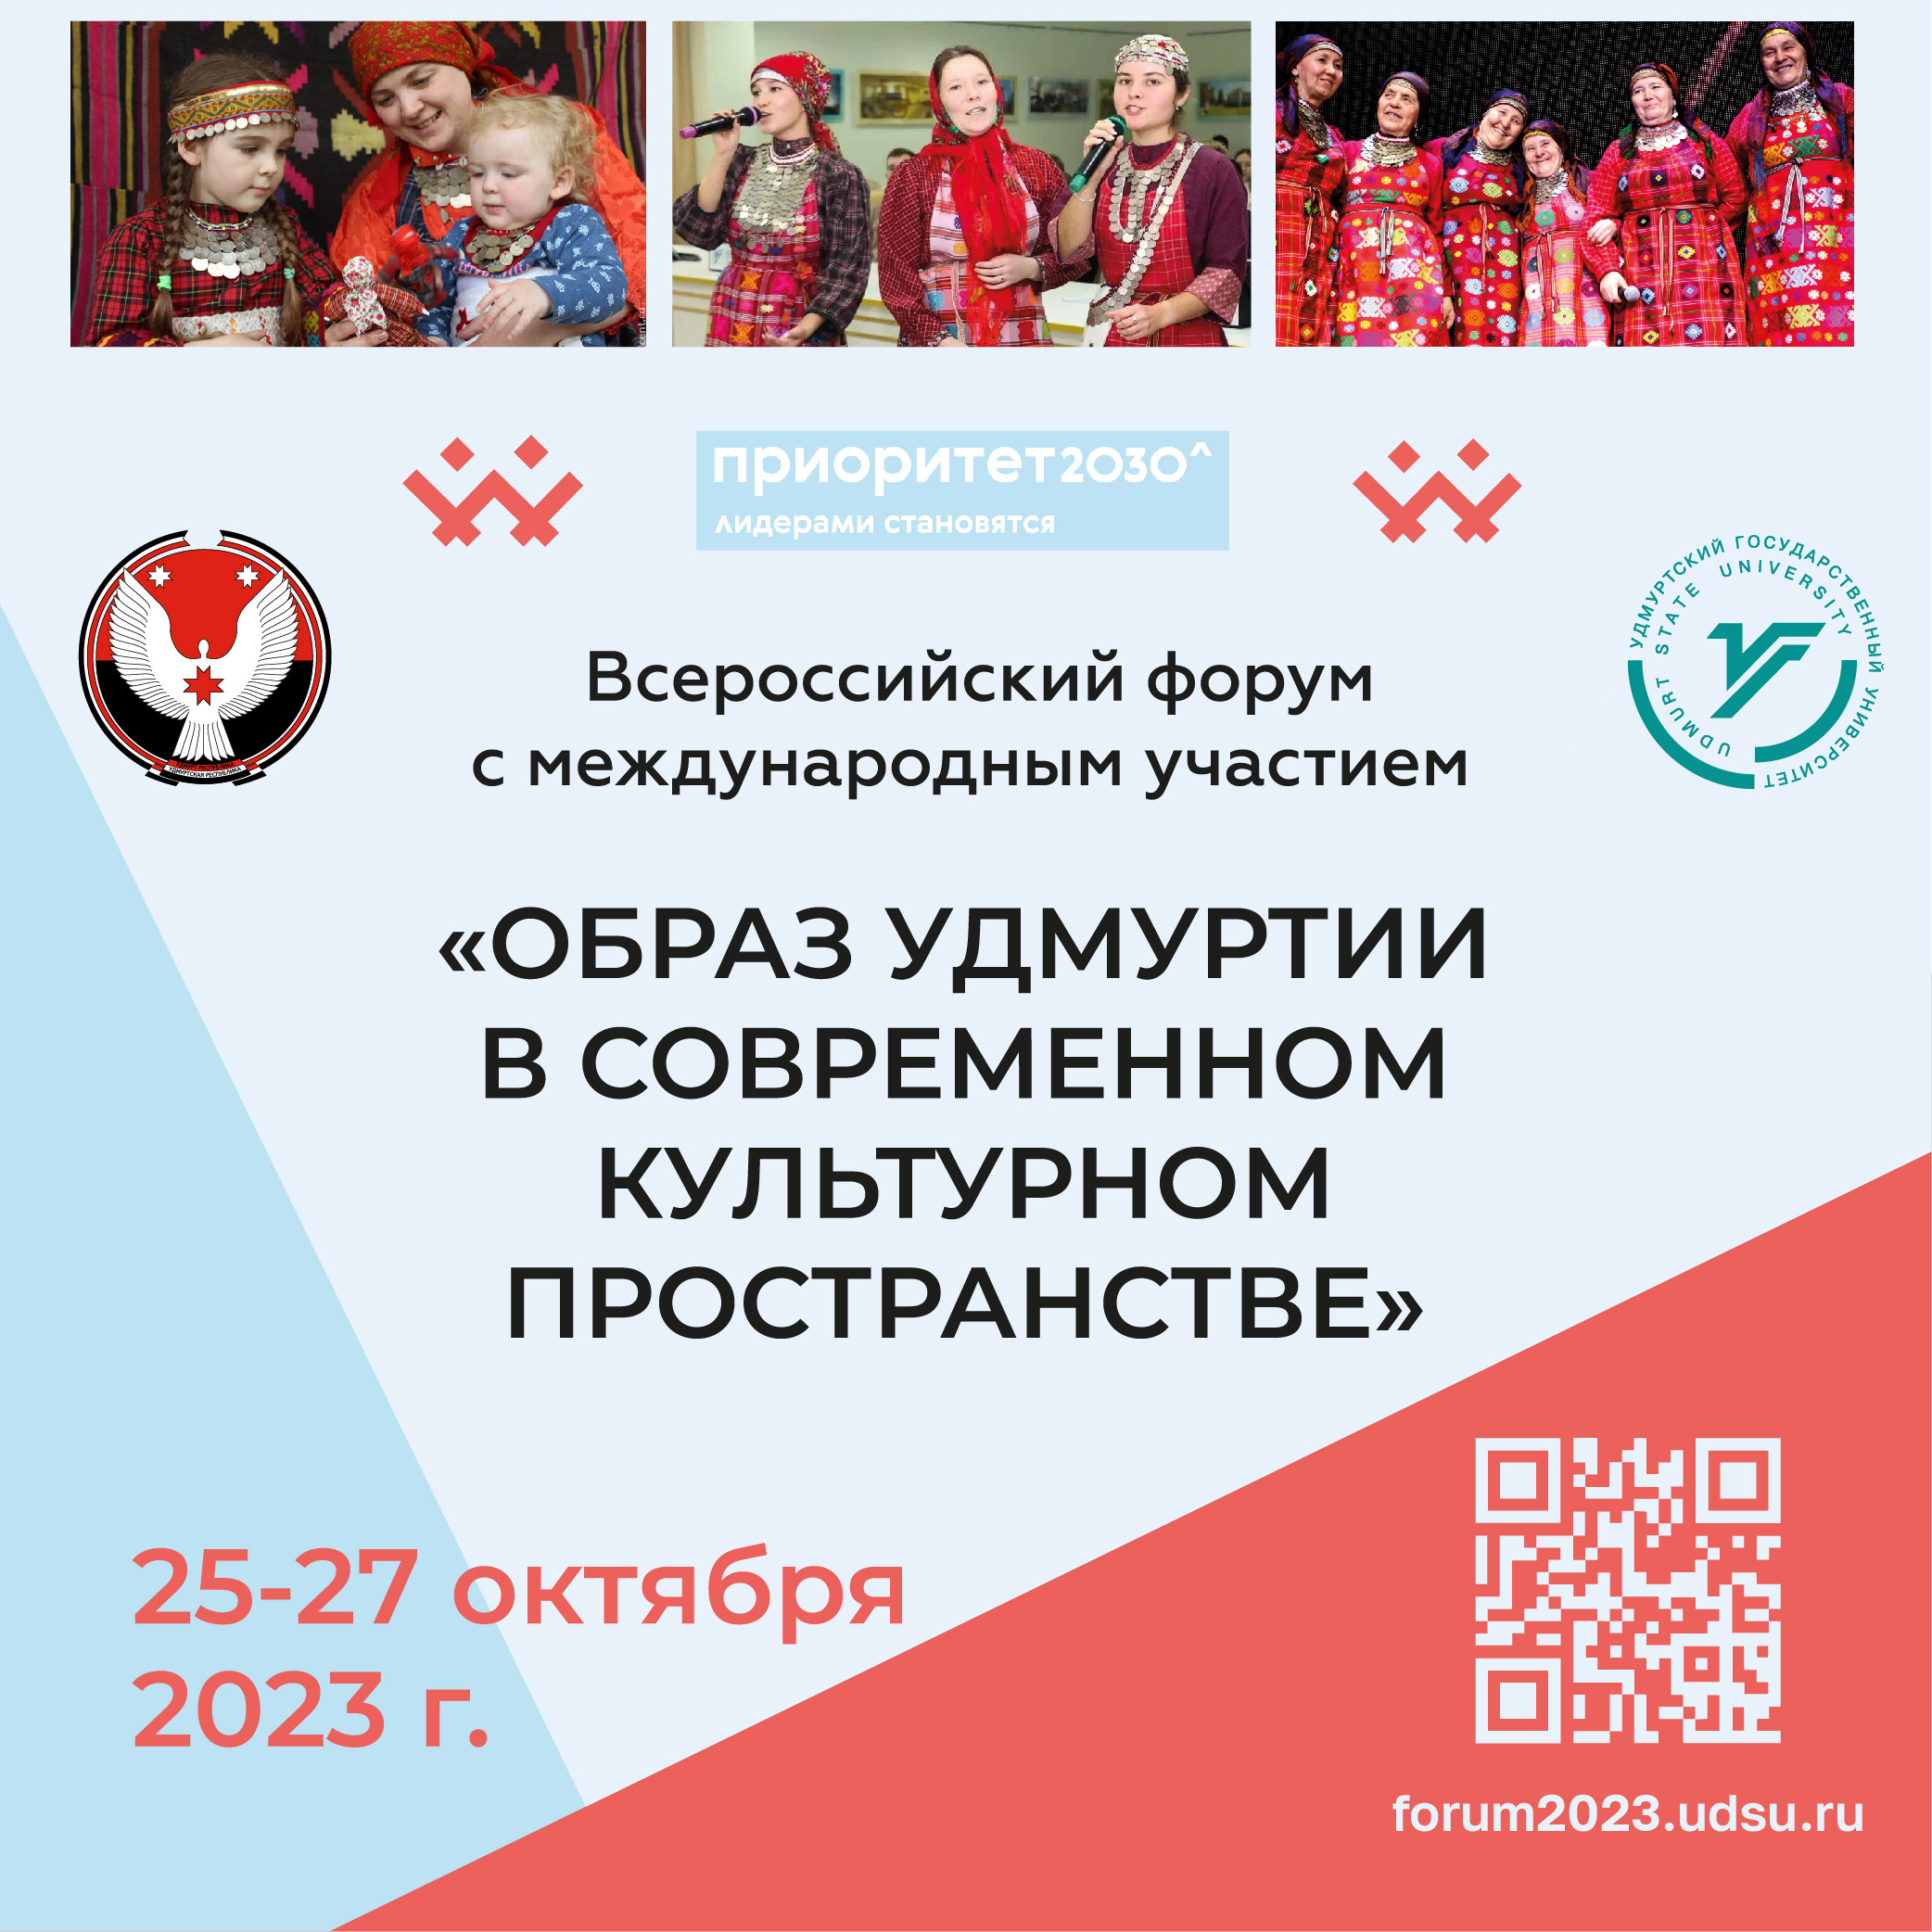 Всероссийский форум «образ удмуртии в современном культурном пространстве» 16